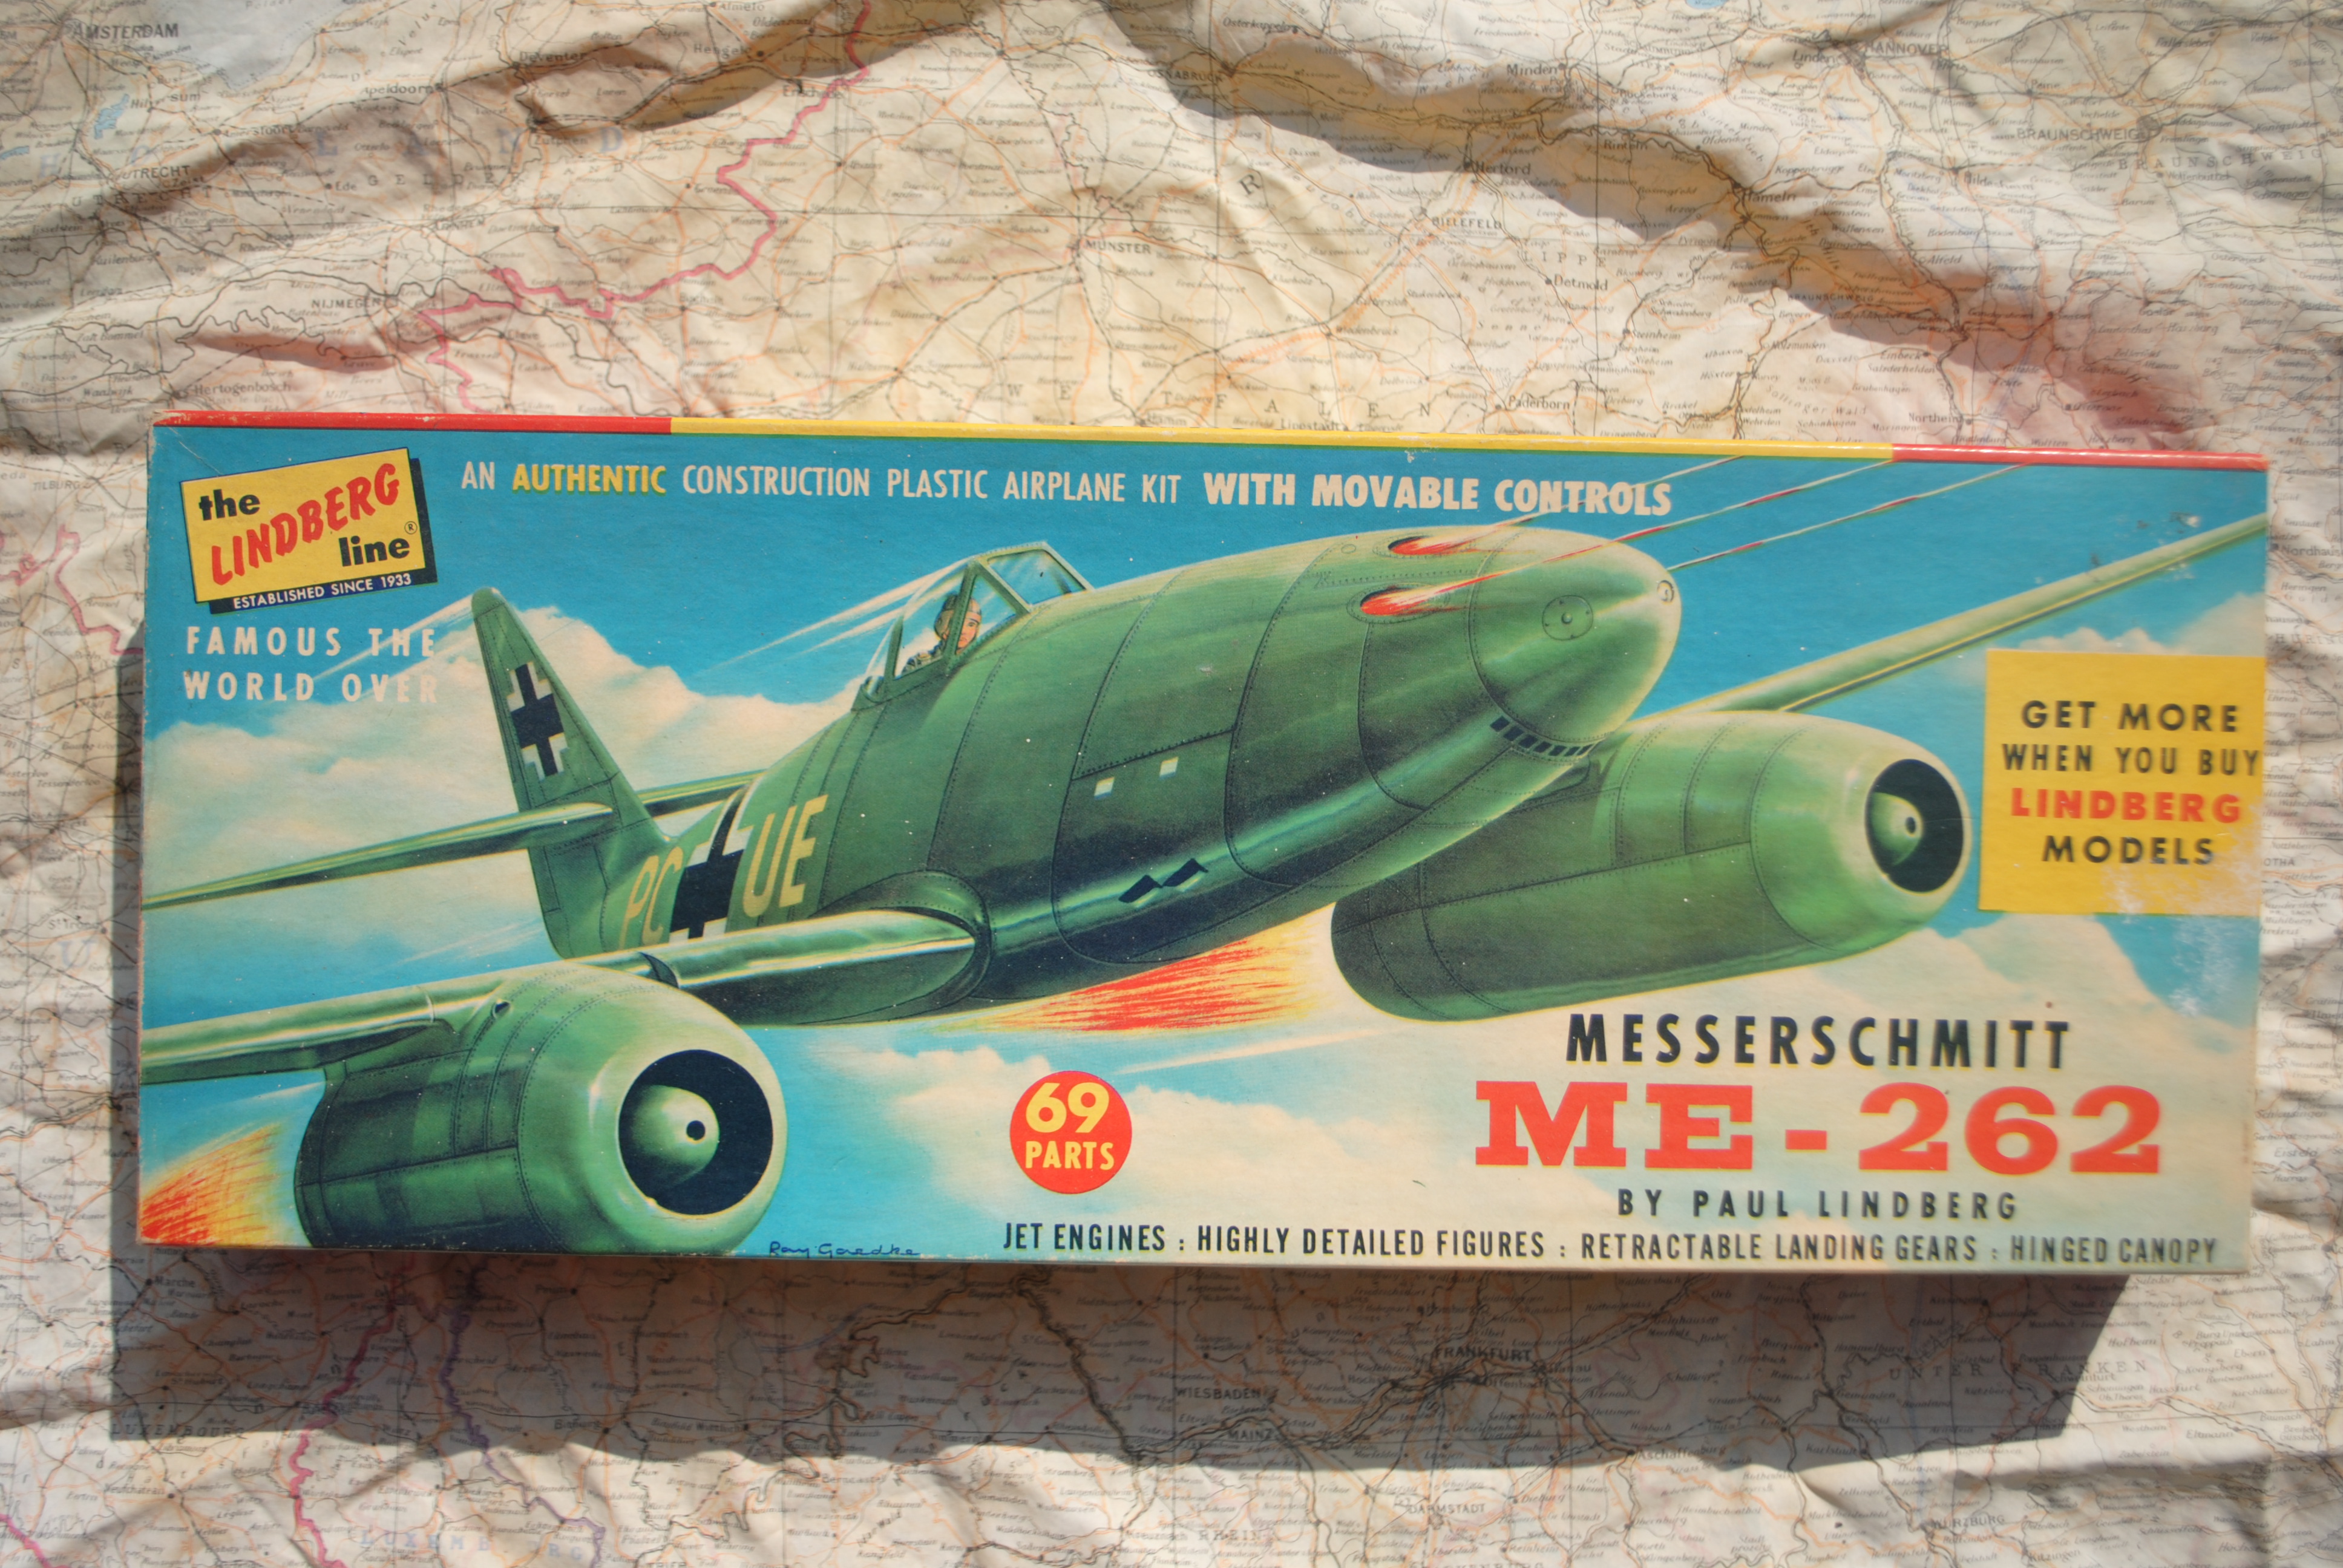 Lindberg 538 Messerschmitt ME-262